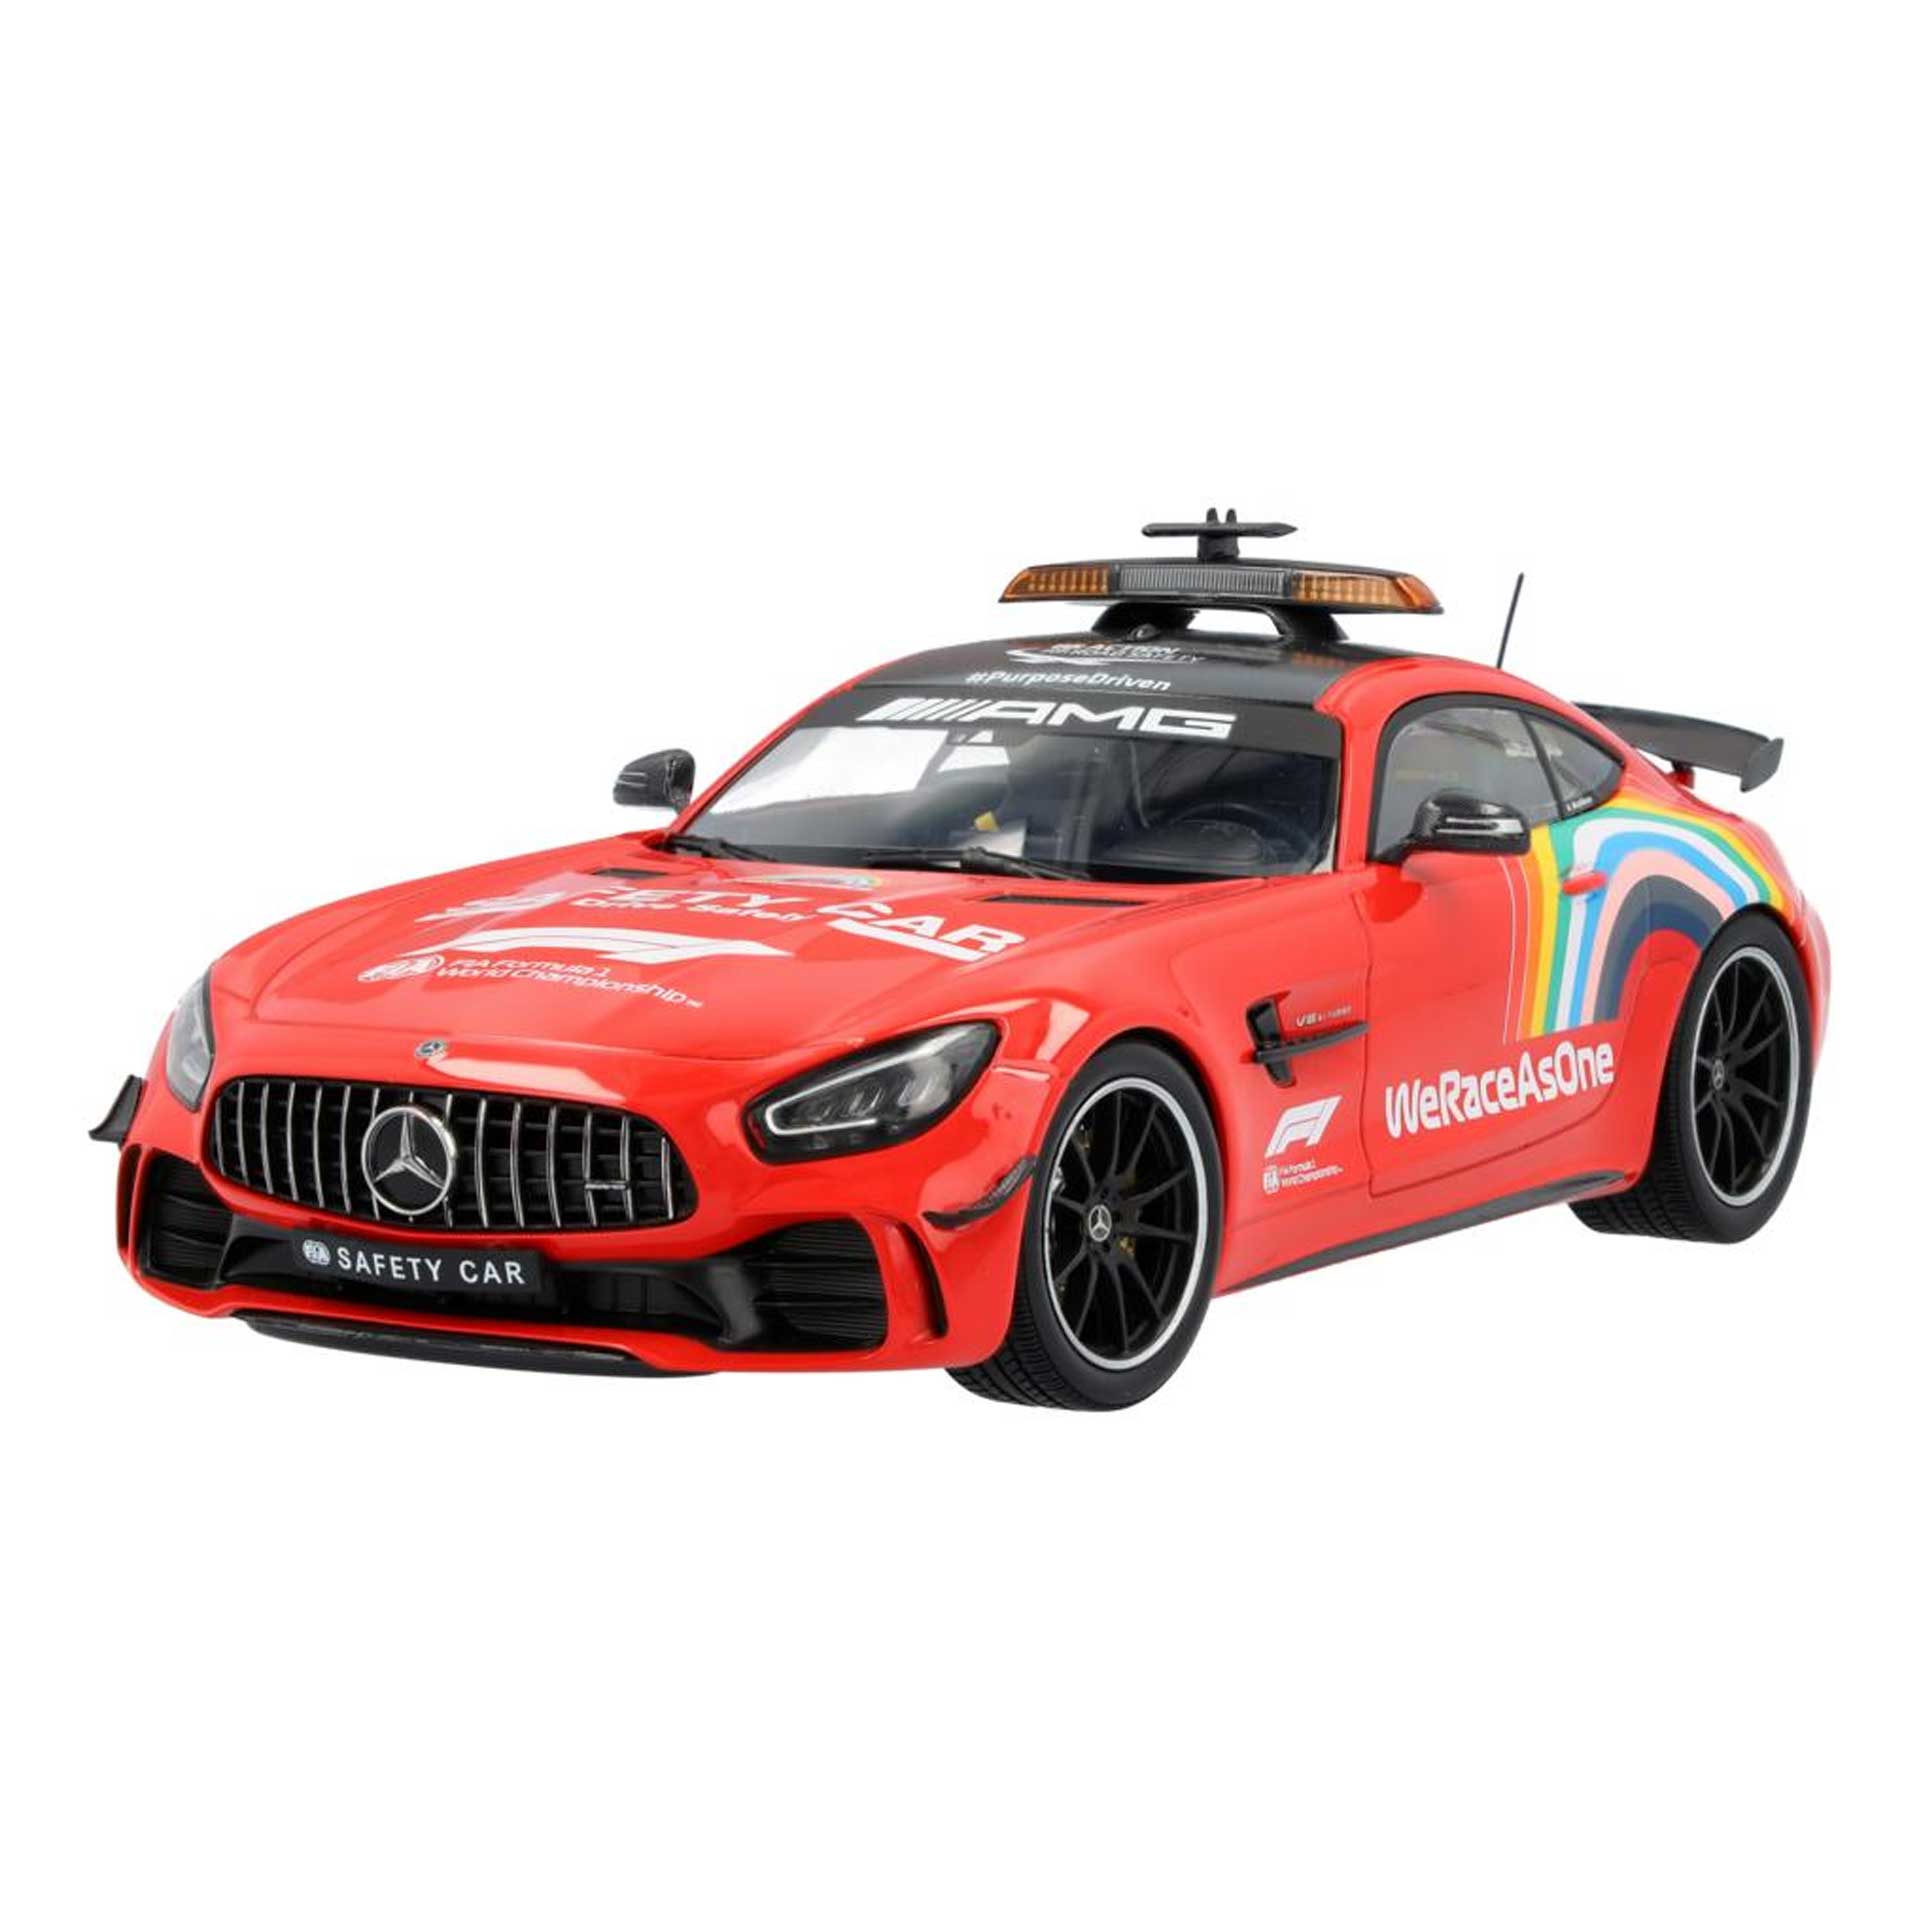 Mercedes-AMG GT R Modellauto Safety Car Formel 1 C190 1:18 rot